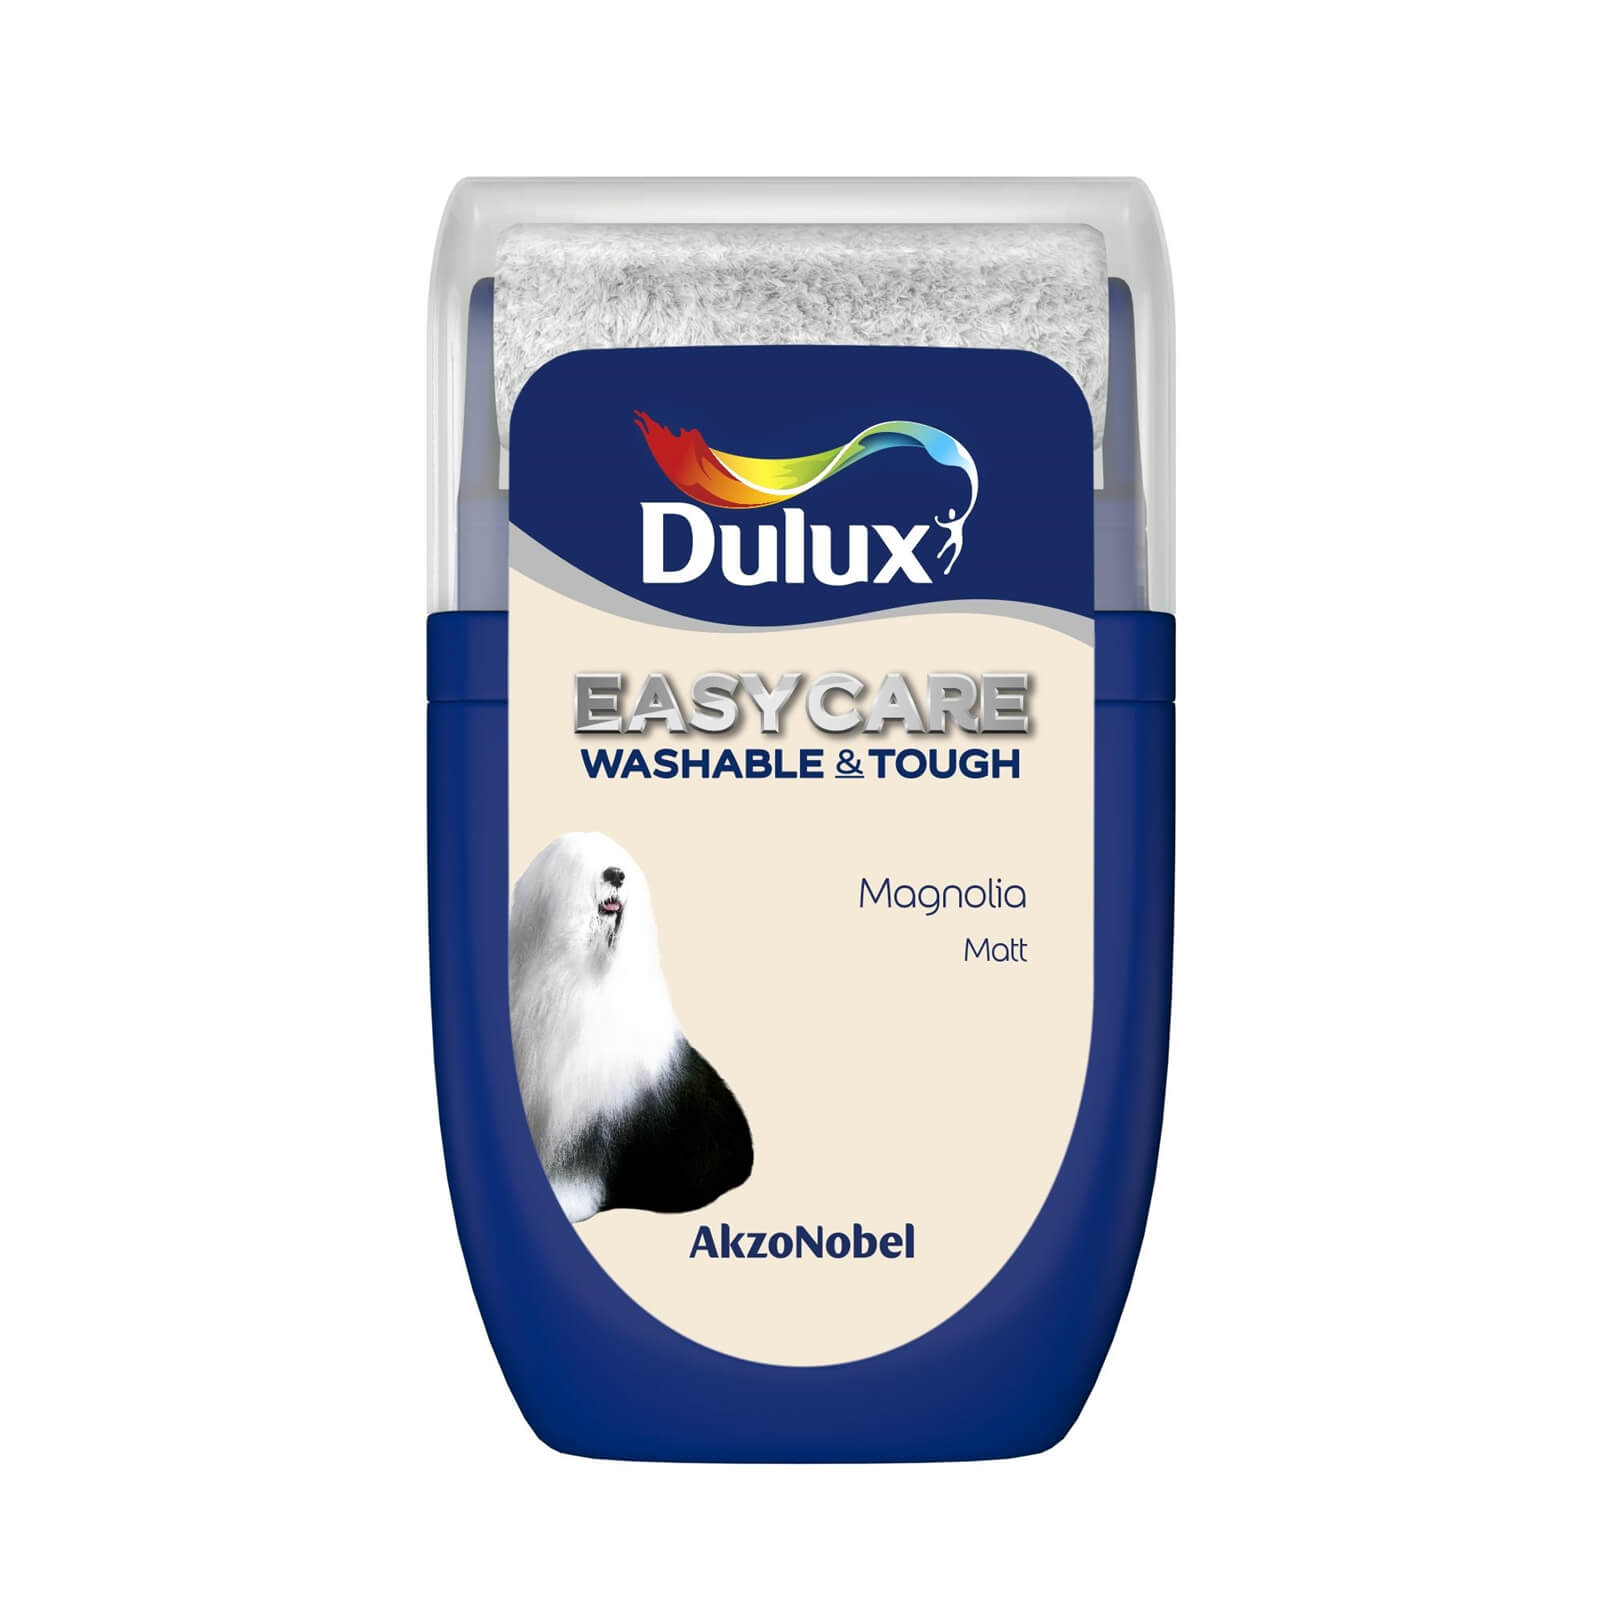 Dulux Easycare Washable & Tough Matt Paint Magnolia - Tester 30ml